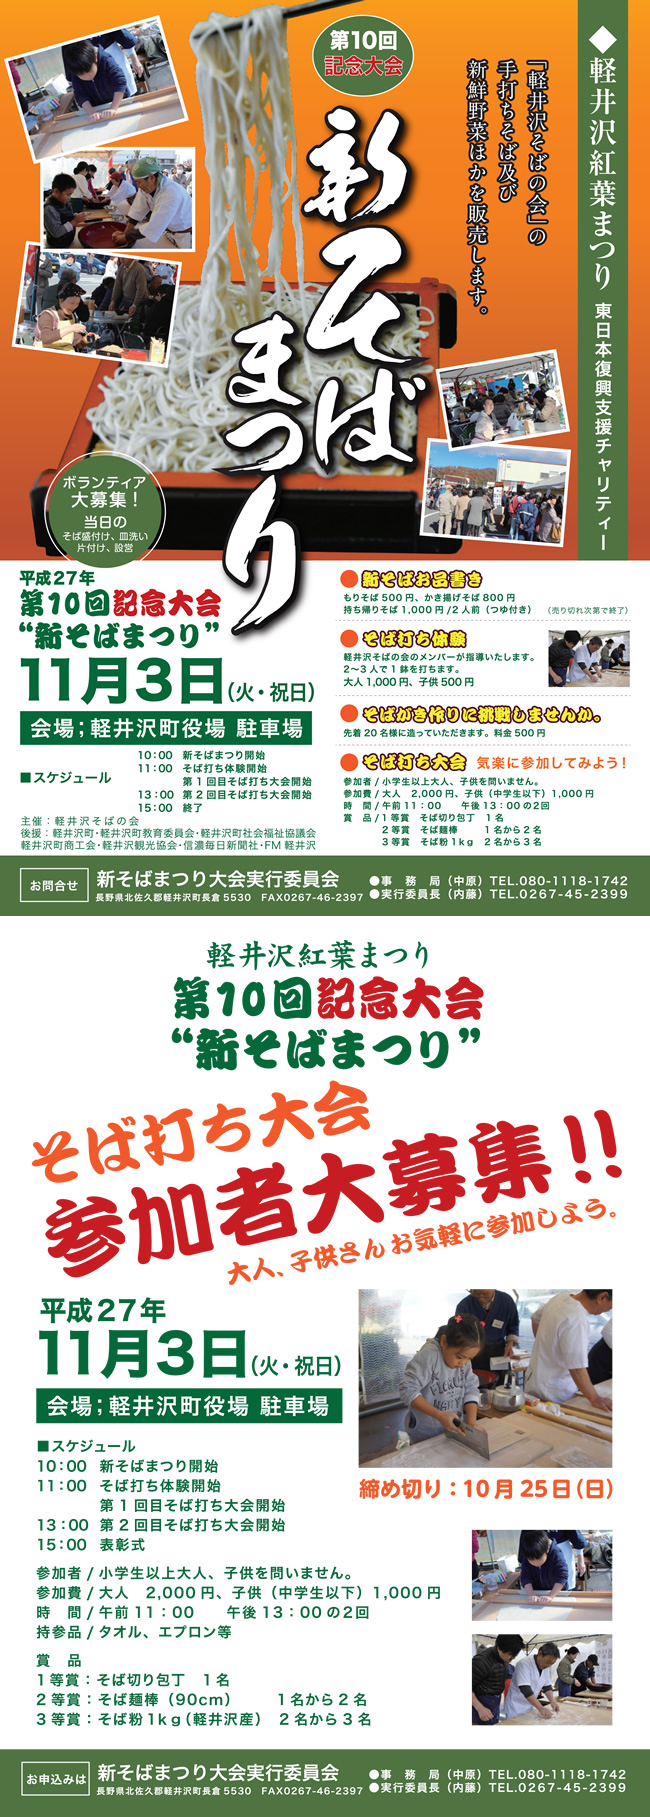 第10回記念大会 新そばまつり 11月3日 開場:軽井沢町役場 駐車場